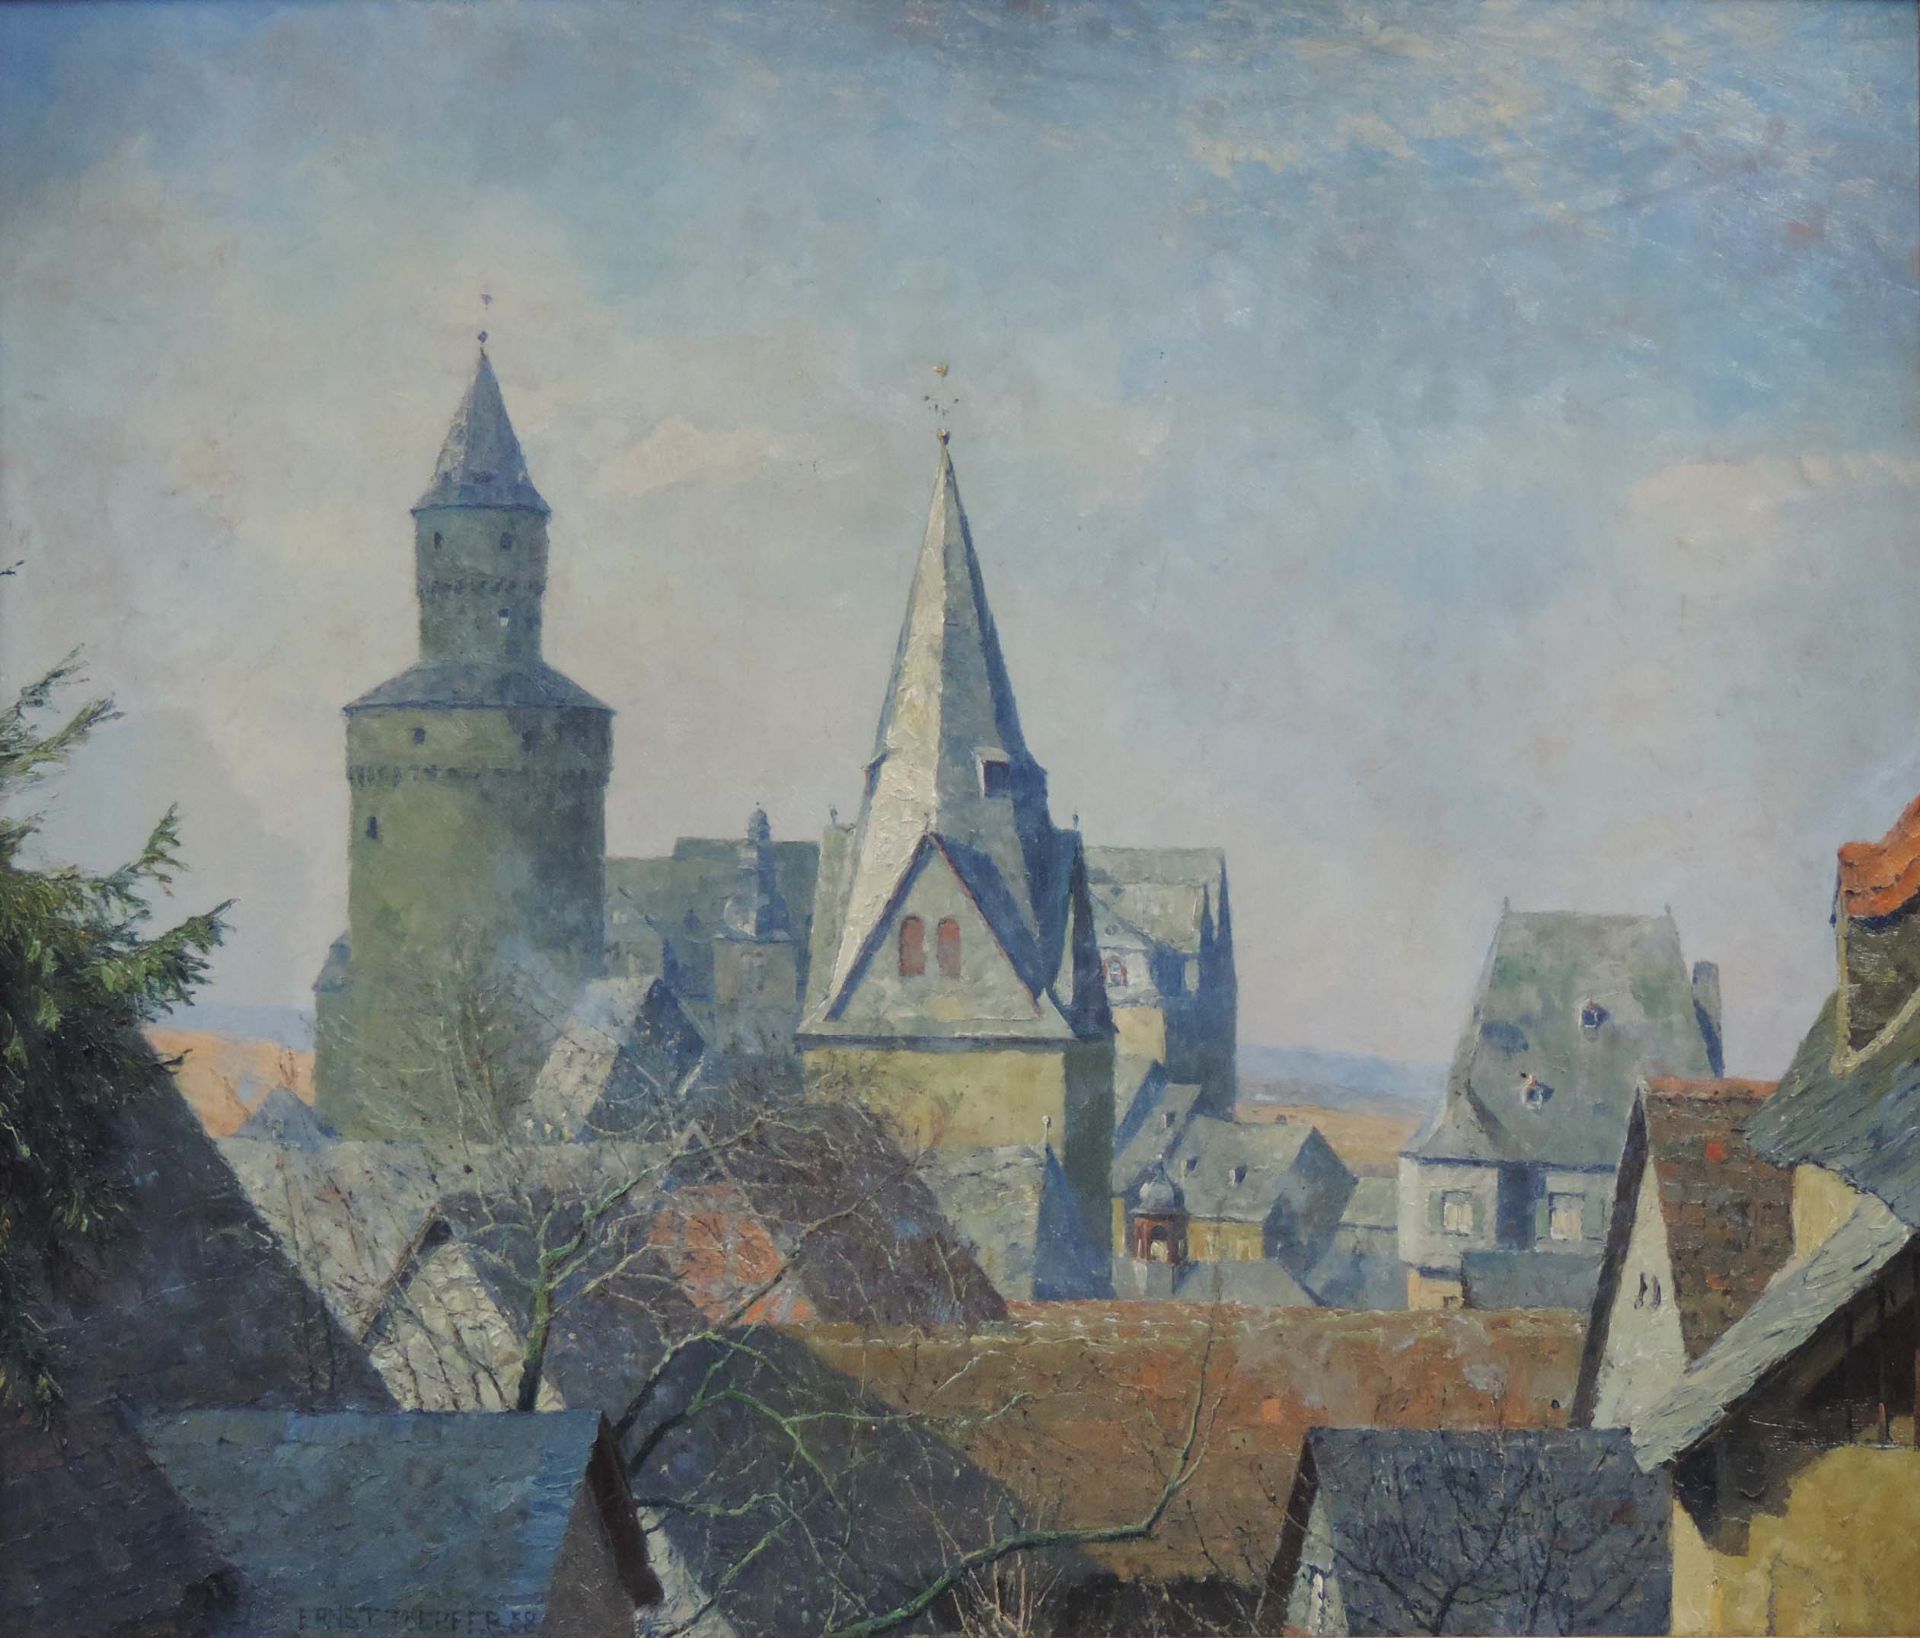 Ernst TOEPFER (1877 - 1955). Idstein im Taunus. Altstadt mit Hexenturm, 193860 cm x 70 cm.